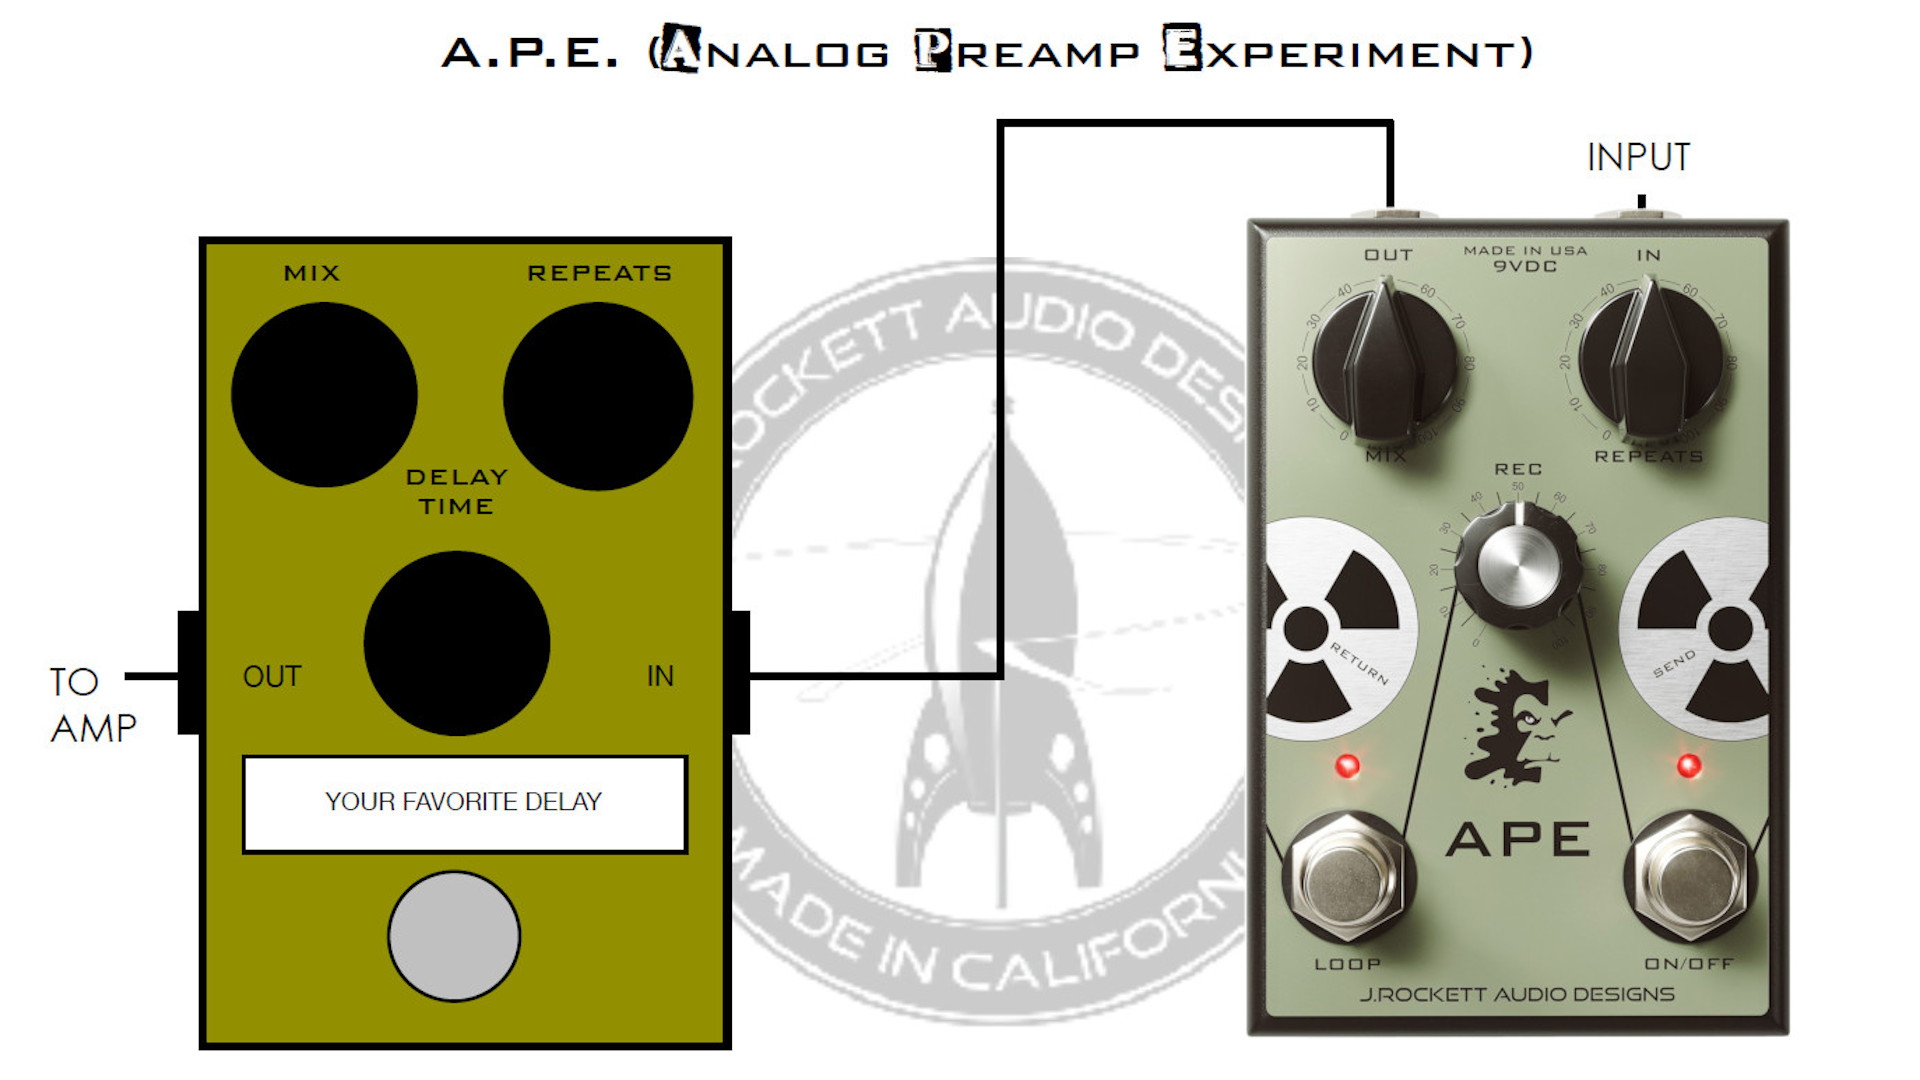 J. Rockett Audio Designs Analog Preamp Experiment (A.P.E.)